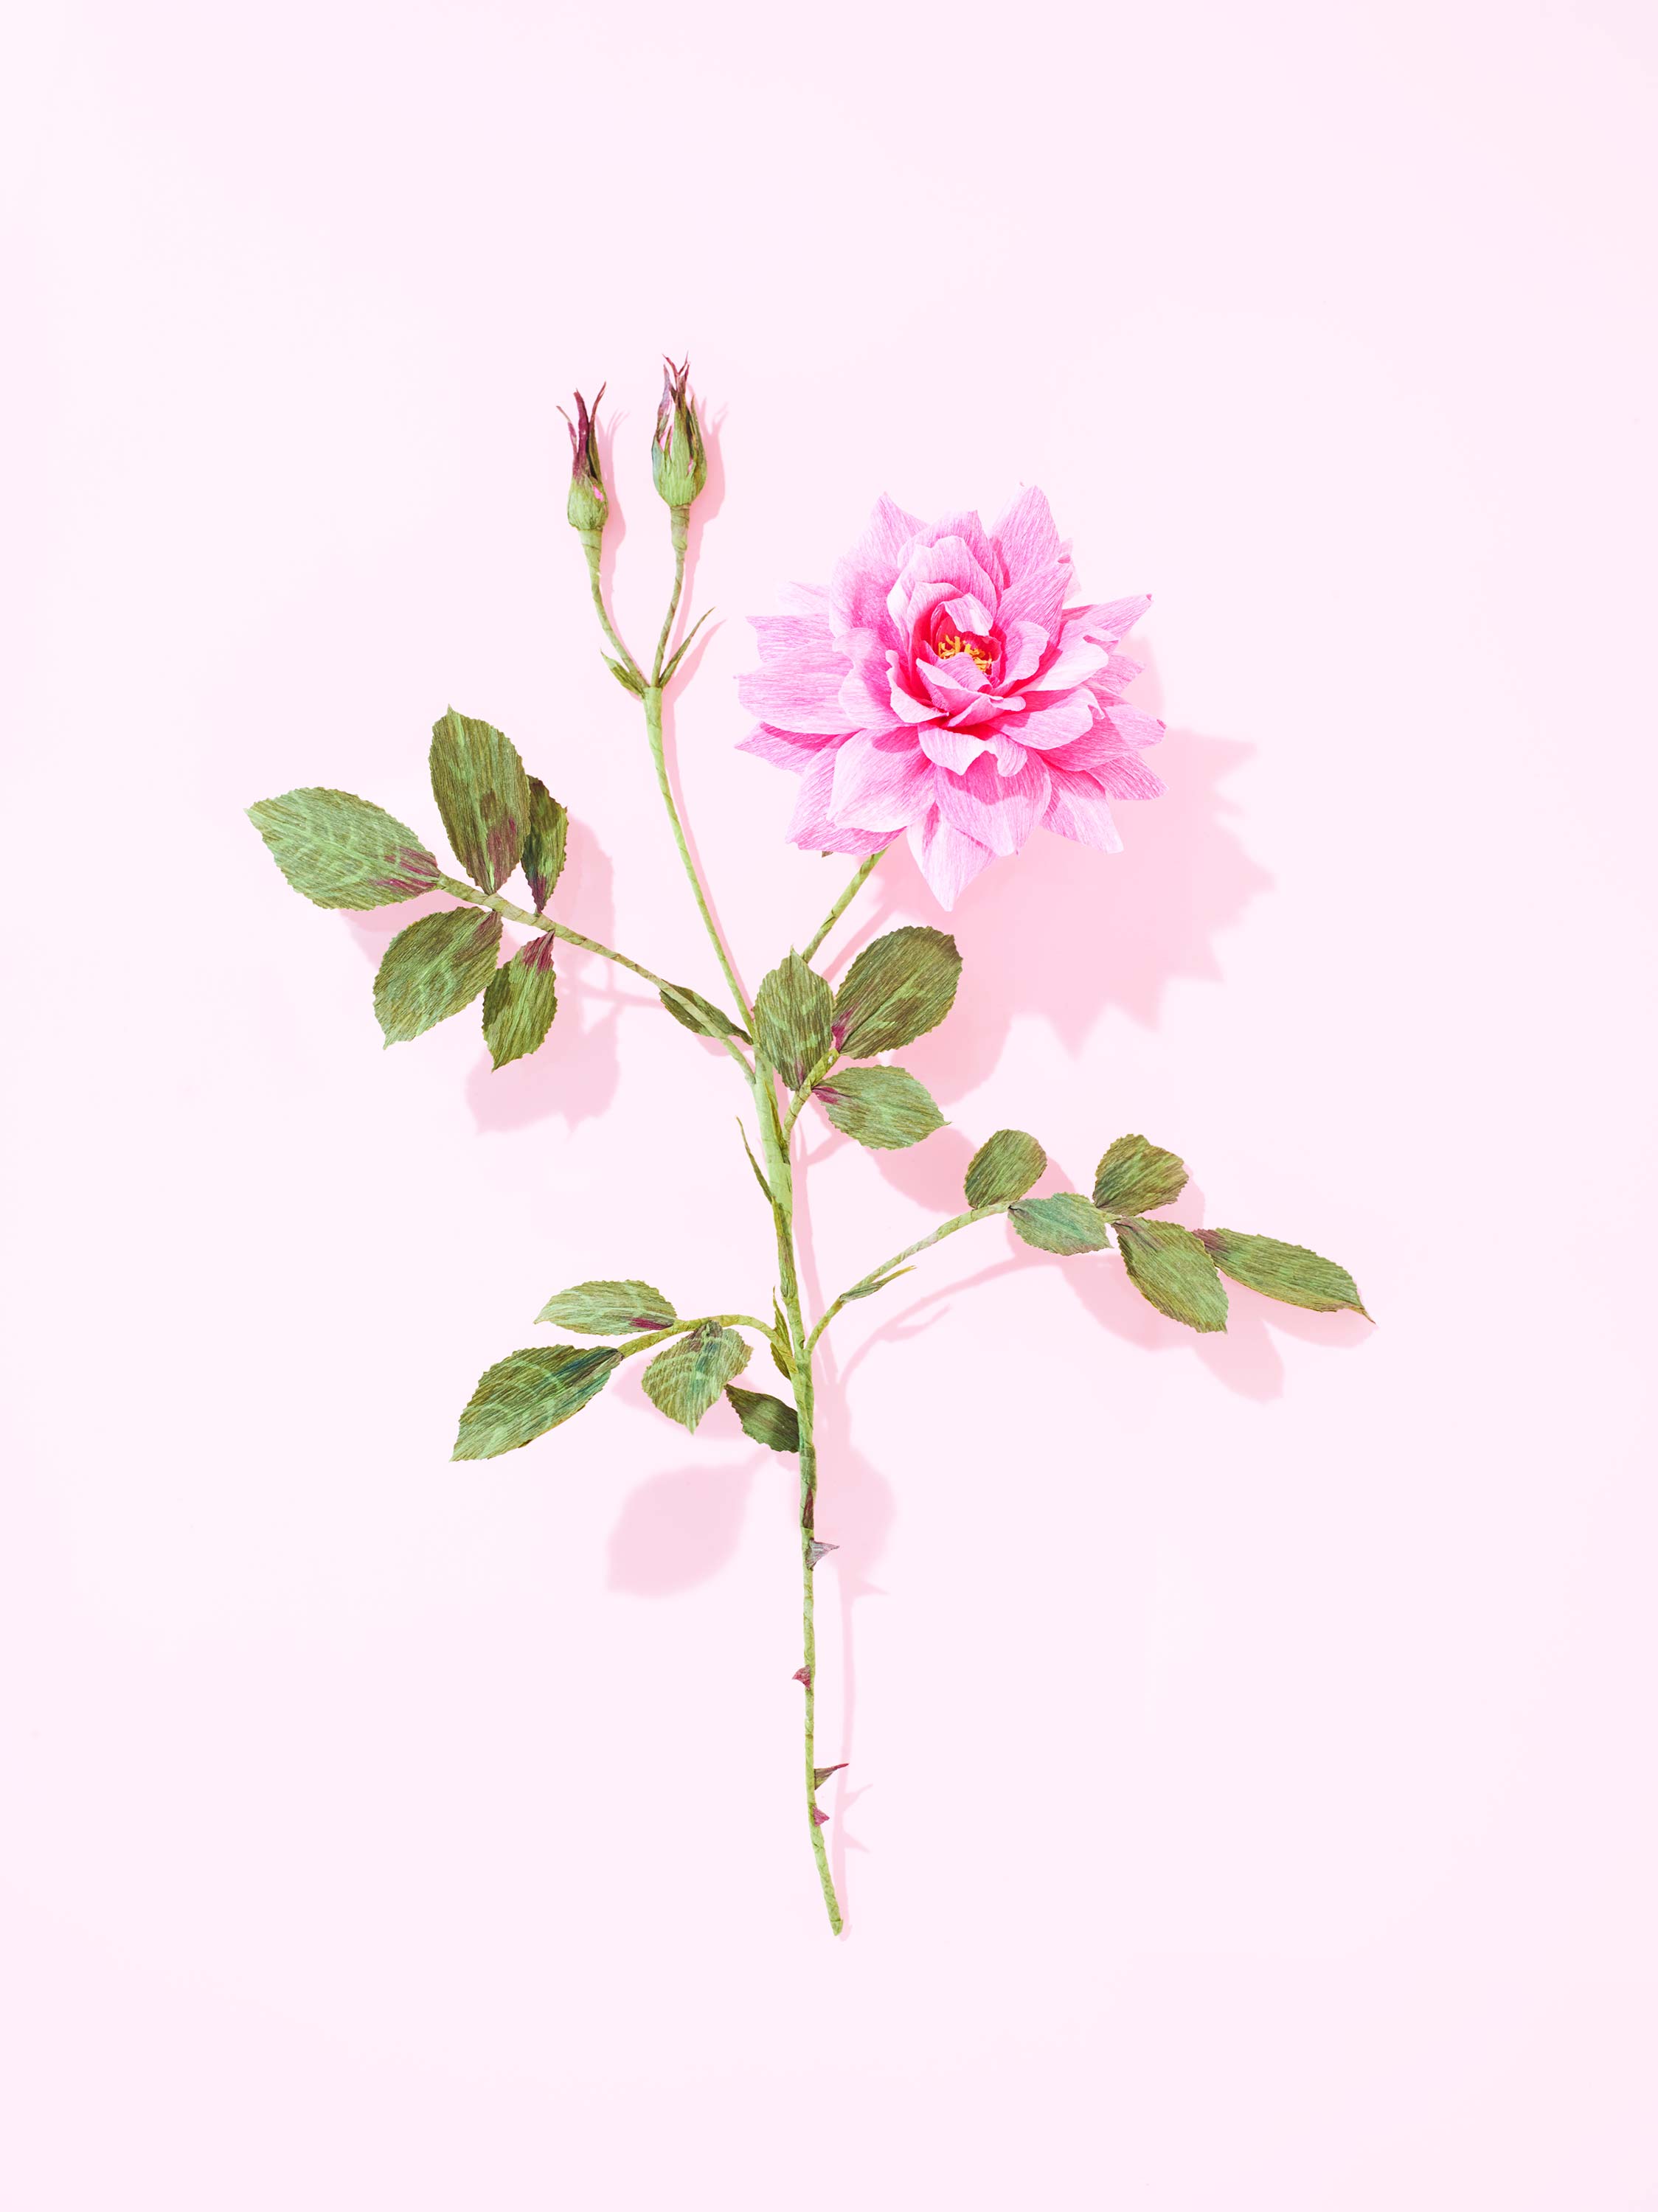 002-Garden-Rose_0017.jpg